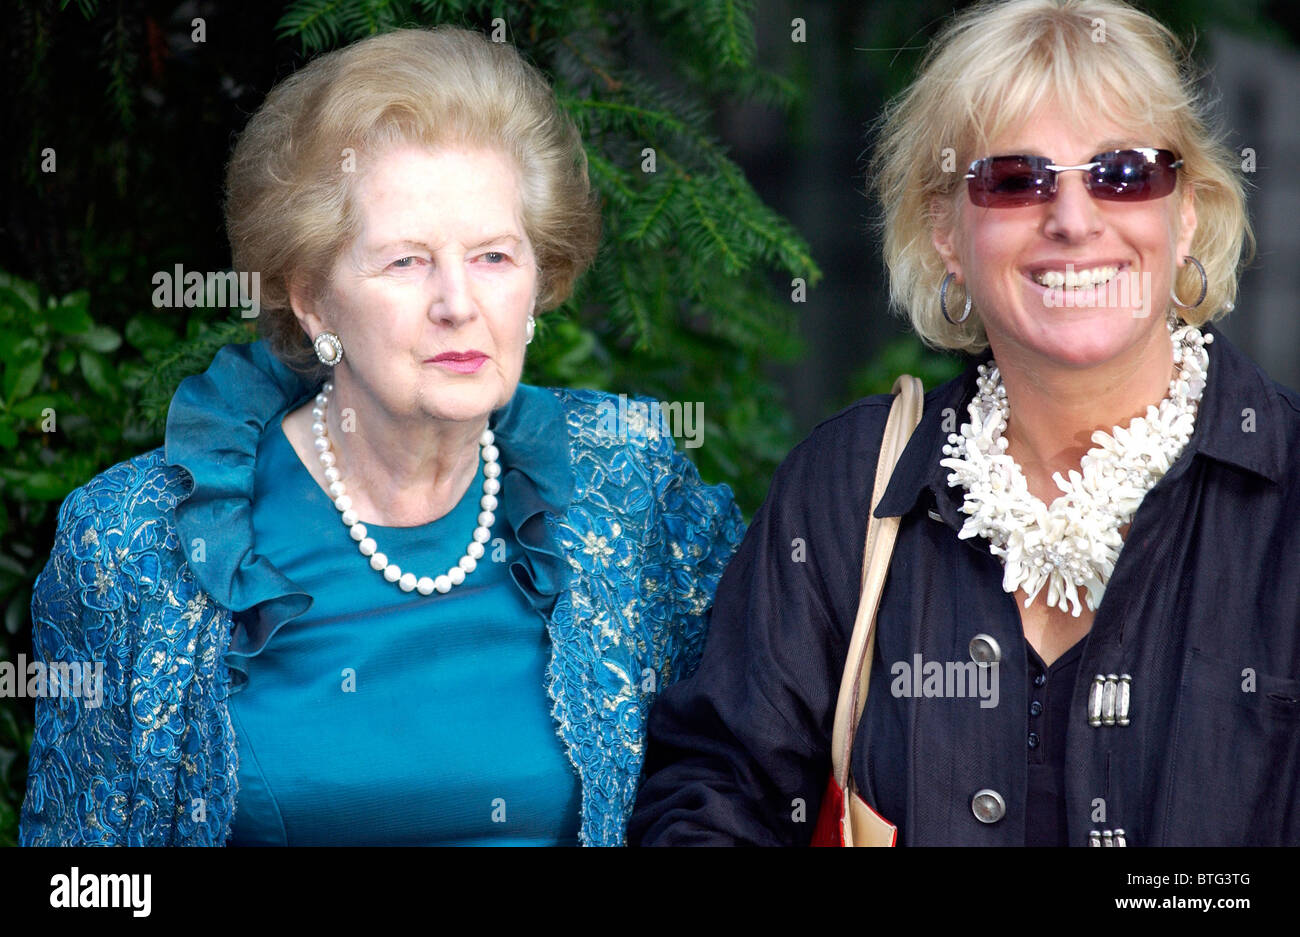 La baronne Margaret Thatcher et sa fille Carol lors d'une fête organisée par le diffuseur Sir David Frost à Chelsea, Londres Banque D'Images